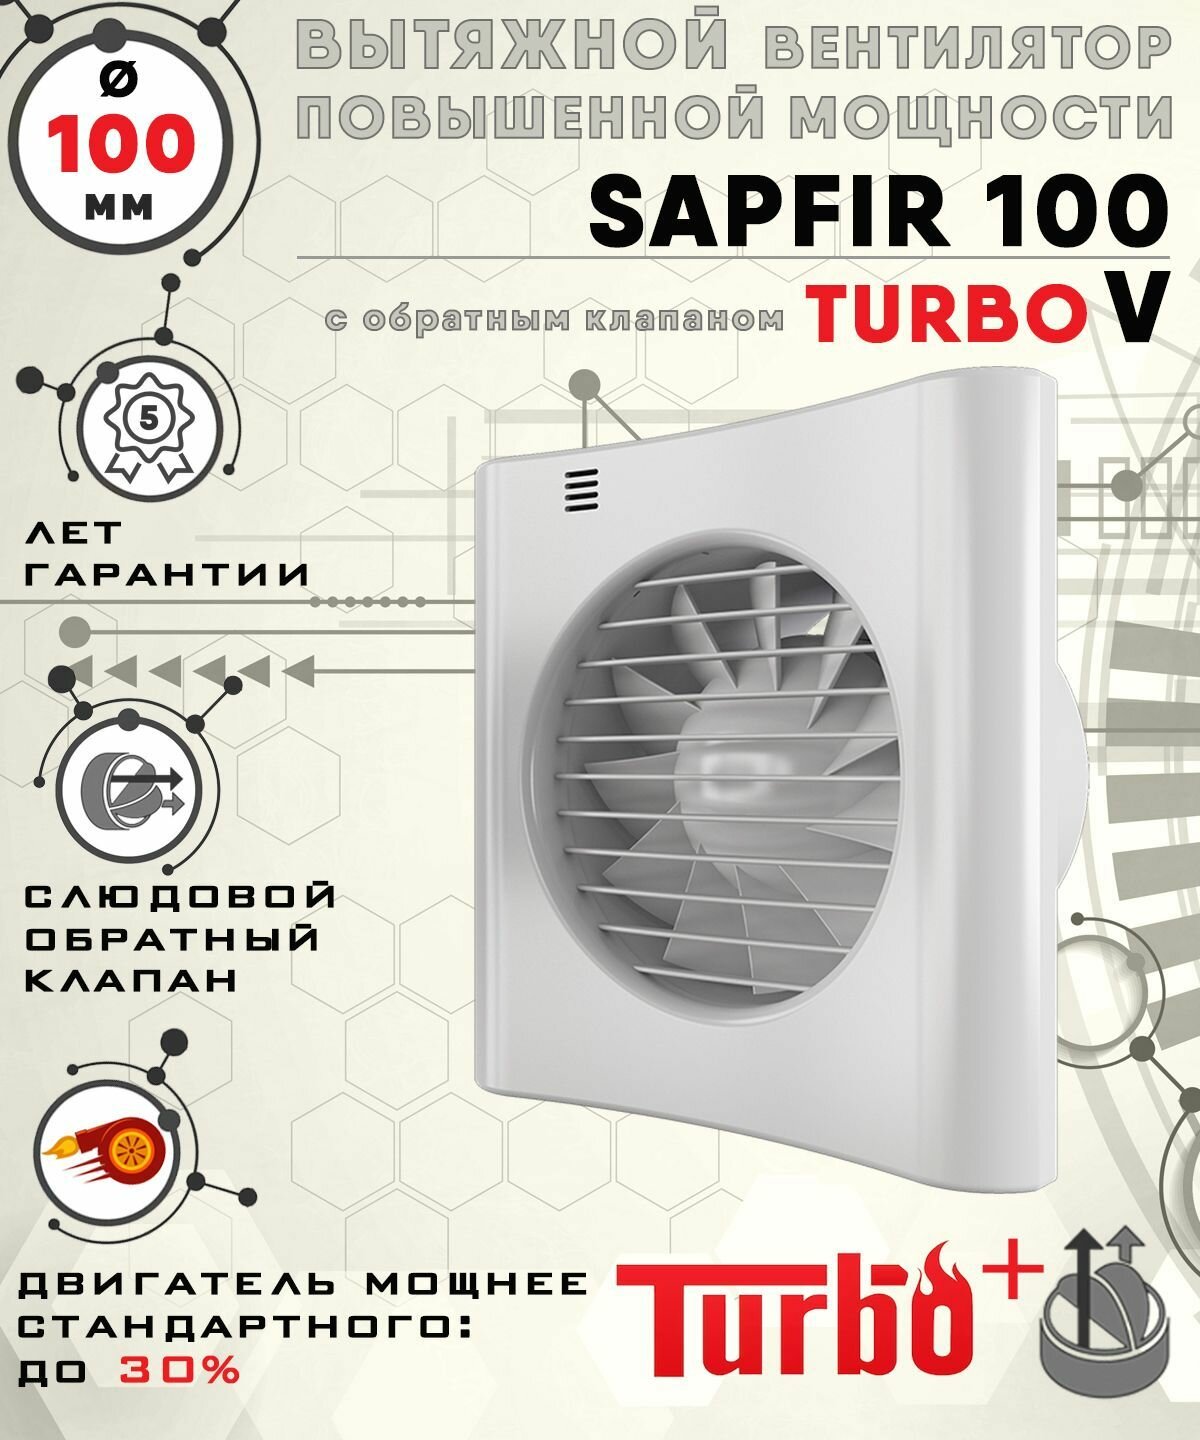 SAPFIR 100 TURBO V вентилятор вытяжной 16 Вт повышенной мощности 120 куб. м/ч. с обратным клапаном диаметр 100 мм ZERNBERG